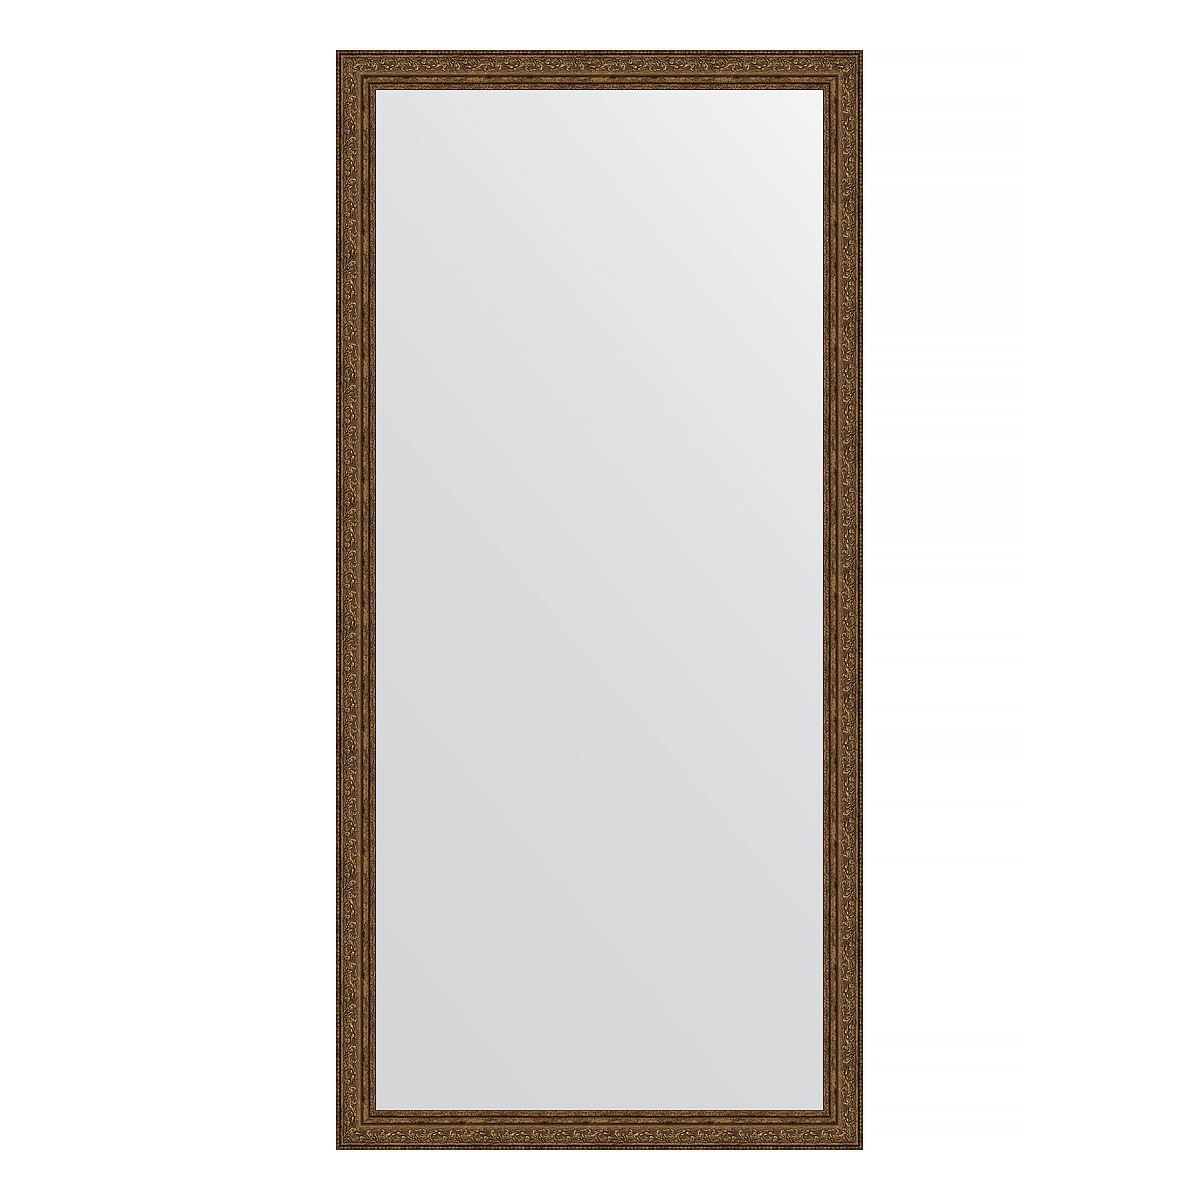 Зеркало в багетной раме Evoform виньетка состаренная бронза 56 мм 74х154 см зеркало с фацетом в багетной раме evoform виньетка бронзовая 85 мм 75х165 см